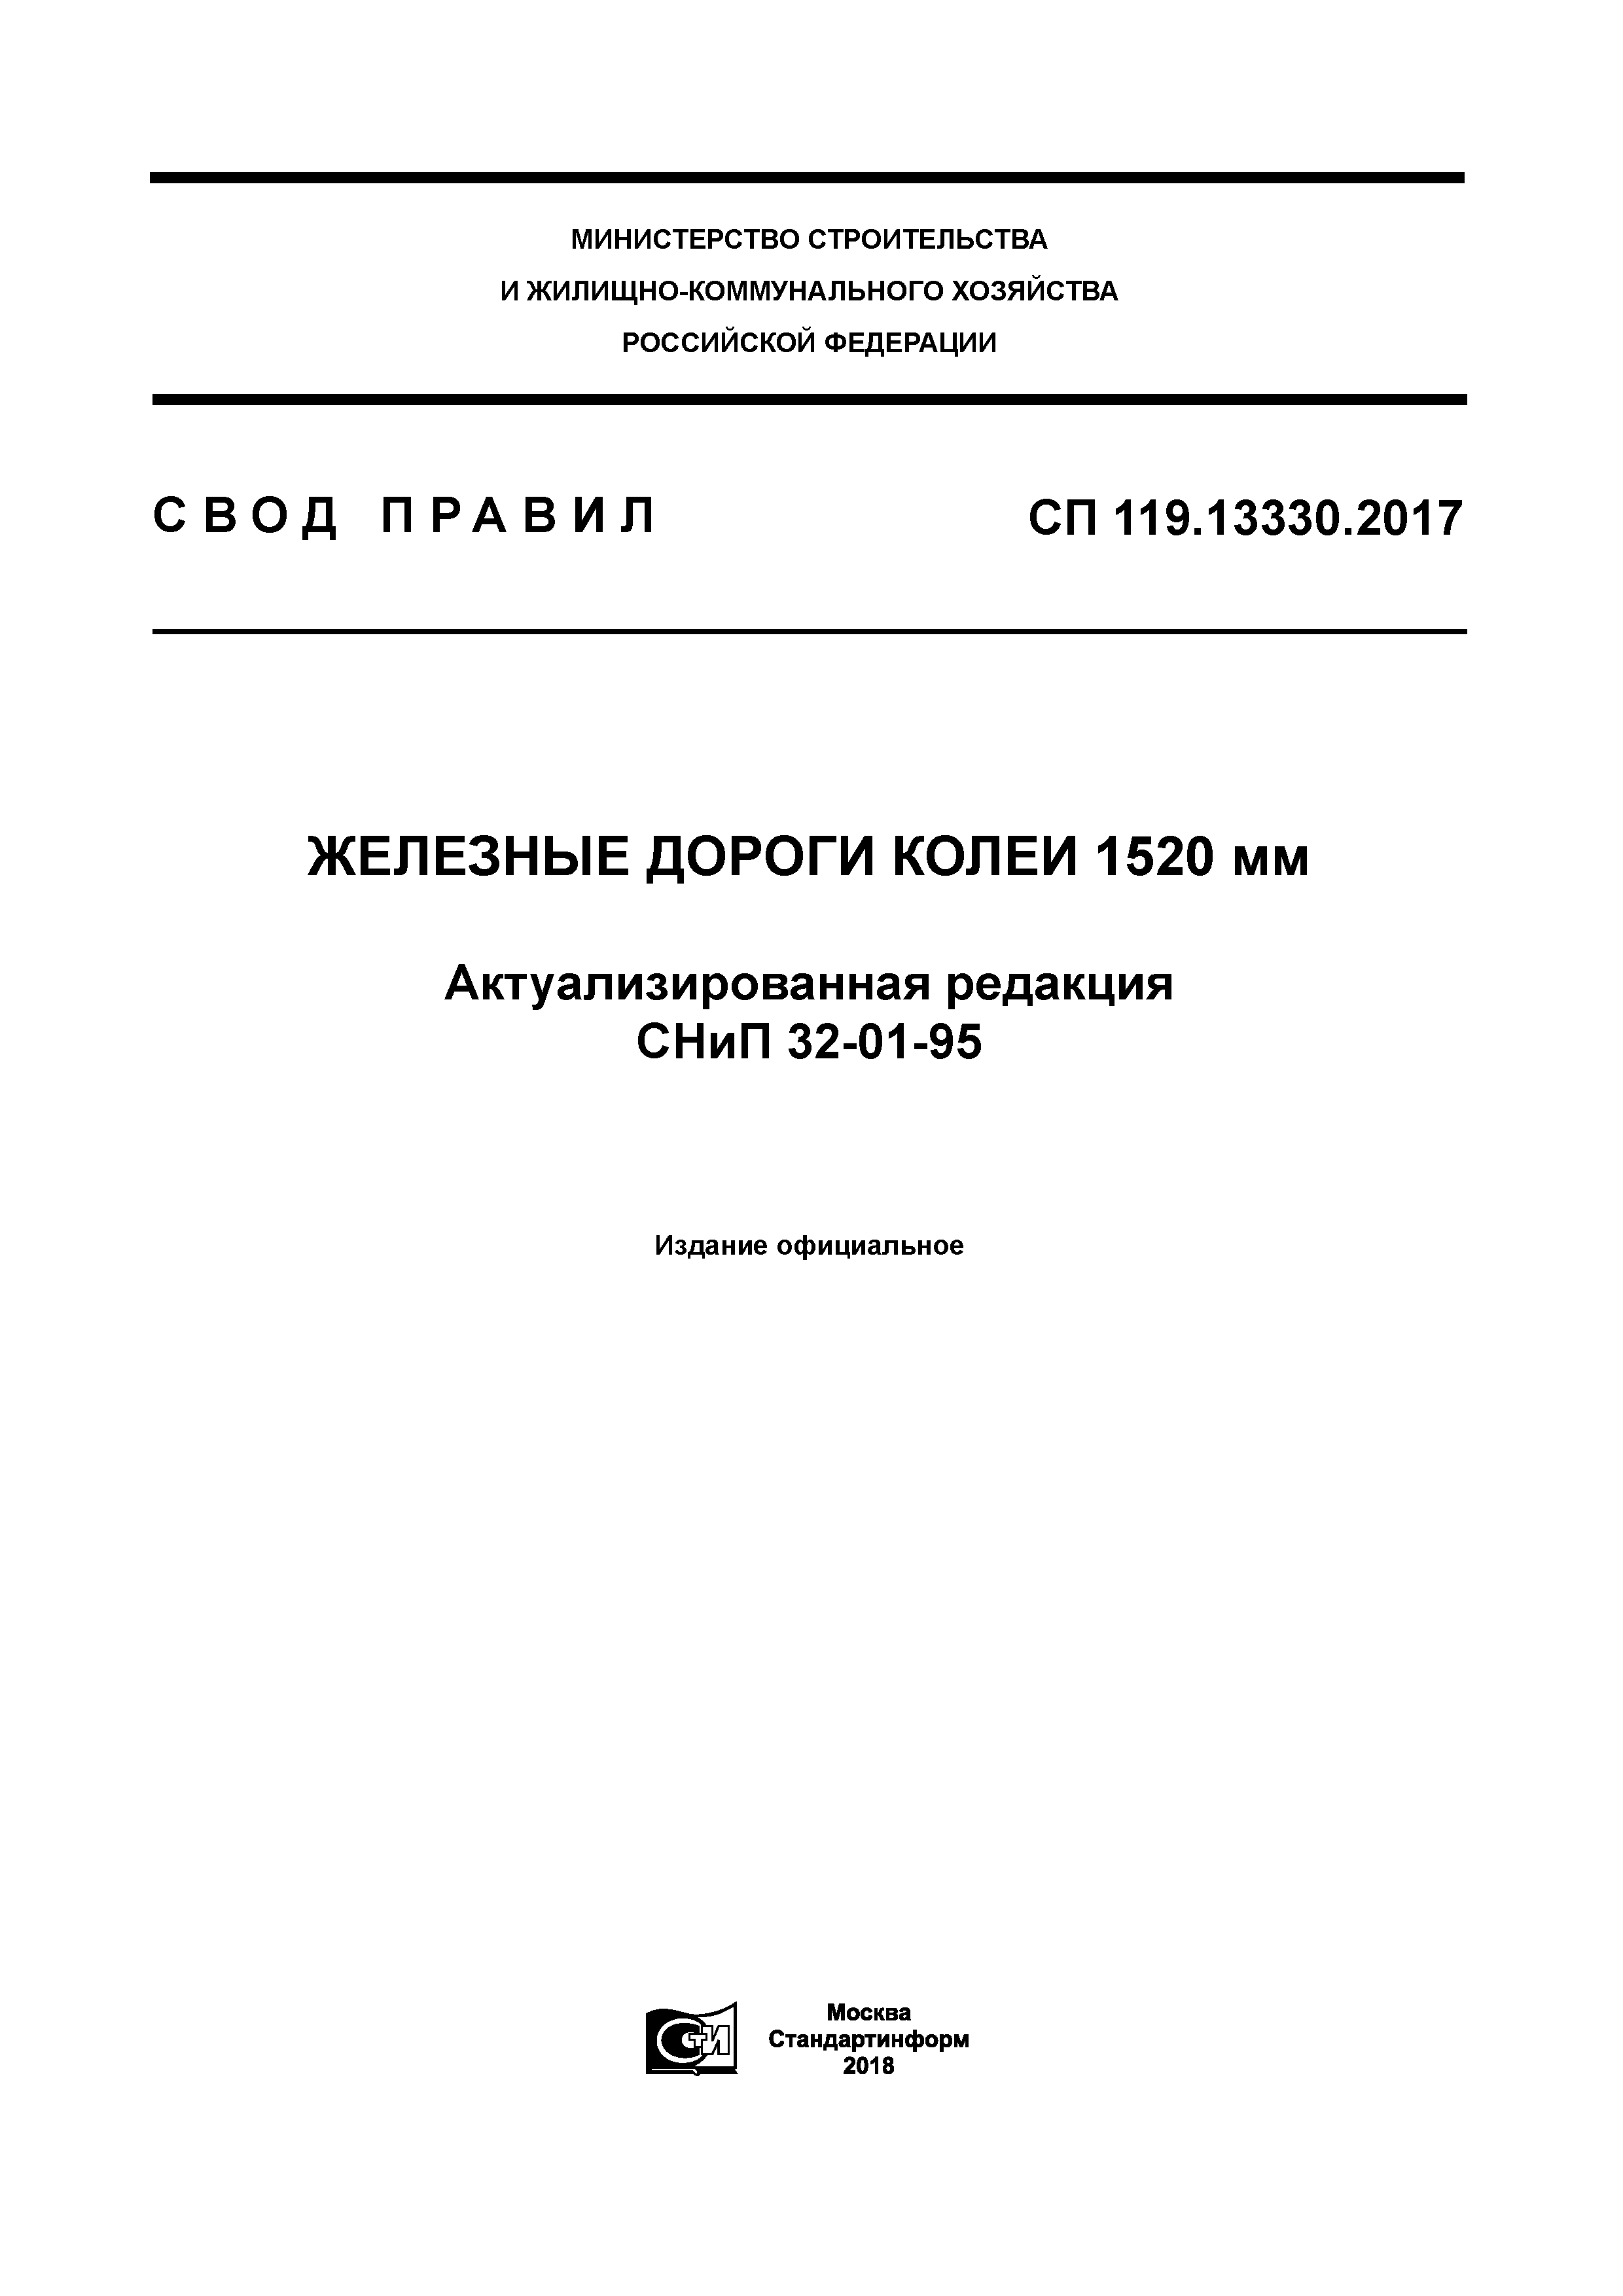 СП 119.13330.2017